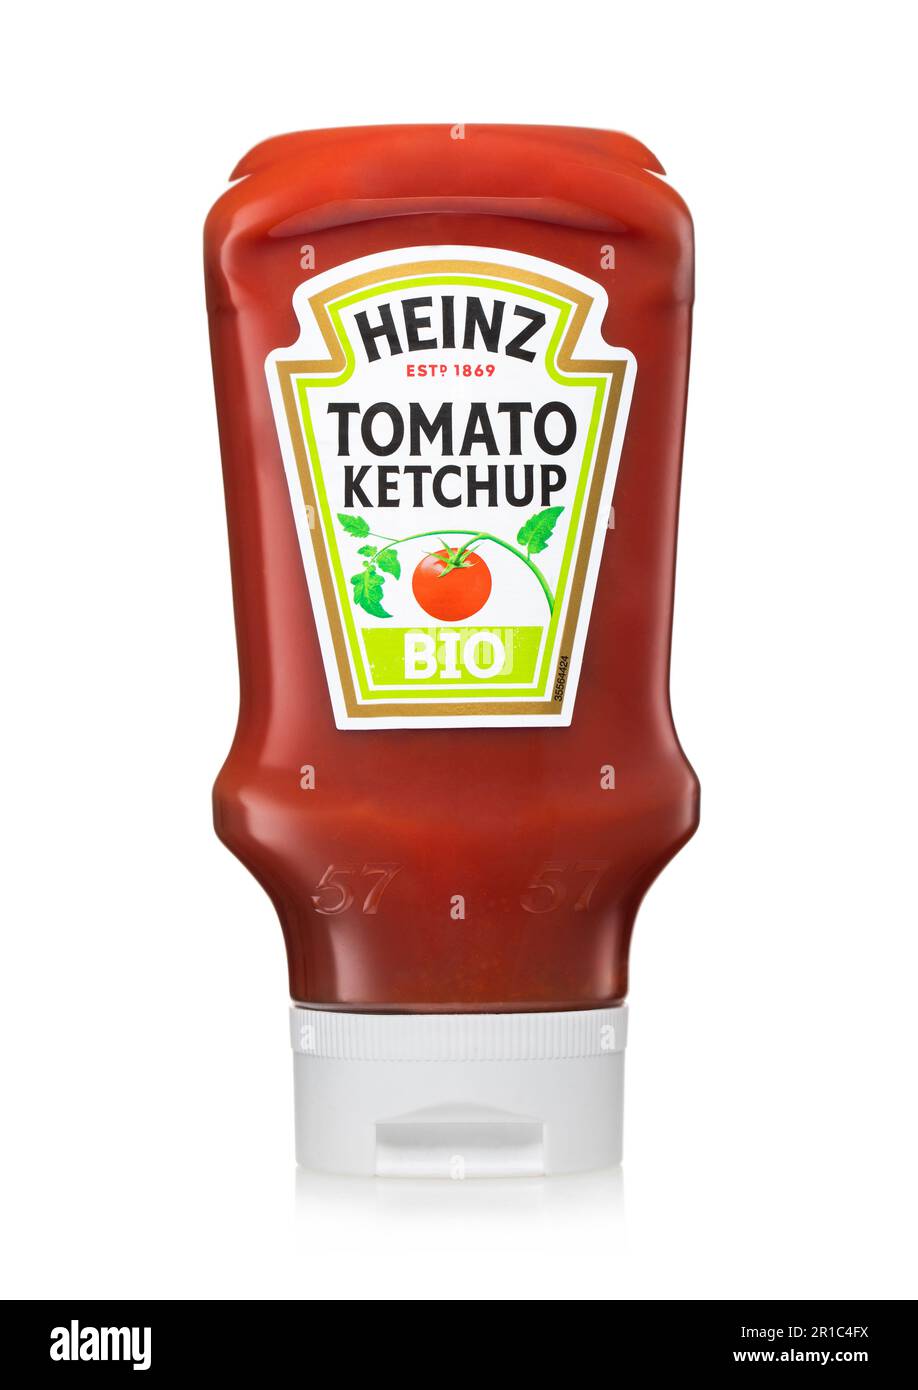 LONDRES, Royaume-Uni - 12 AVRIL 2023 : bouteille de ketchup biologique Heinz à la tomate sur blanc. Banque D'Images